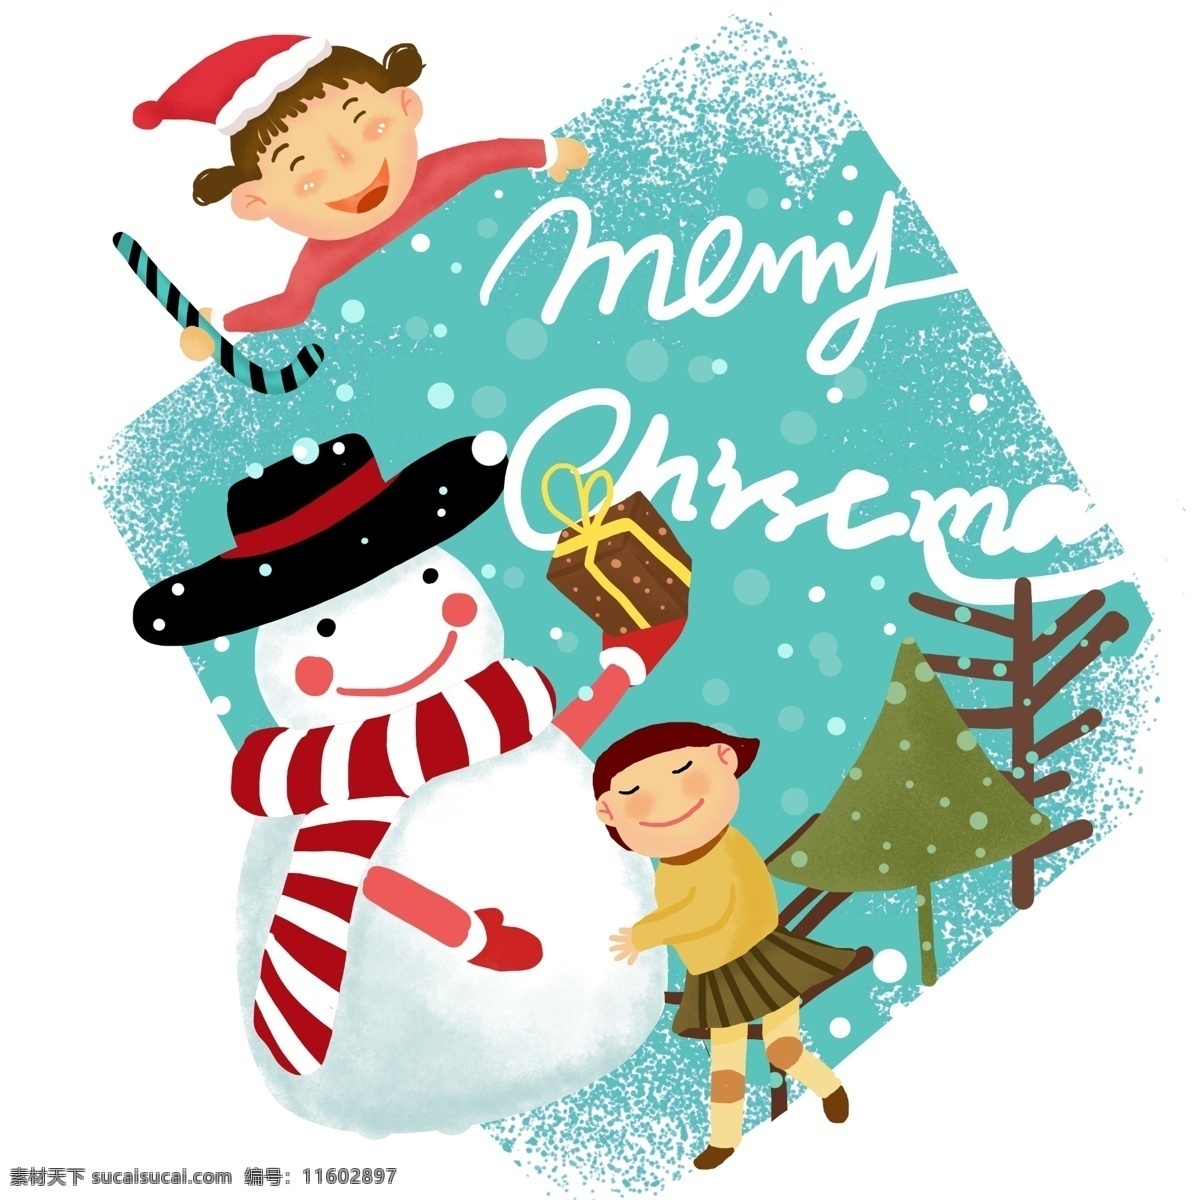 手绘 圣诞节 装饰 插画 圣诞树 雪人 围巾 圣诞节快乐 圣诞插画 拐杖 圣诞礼物